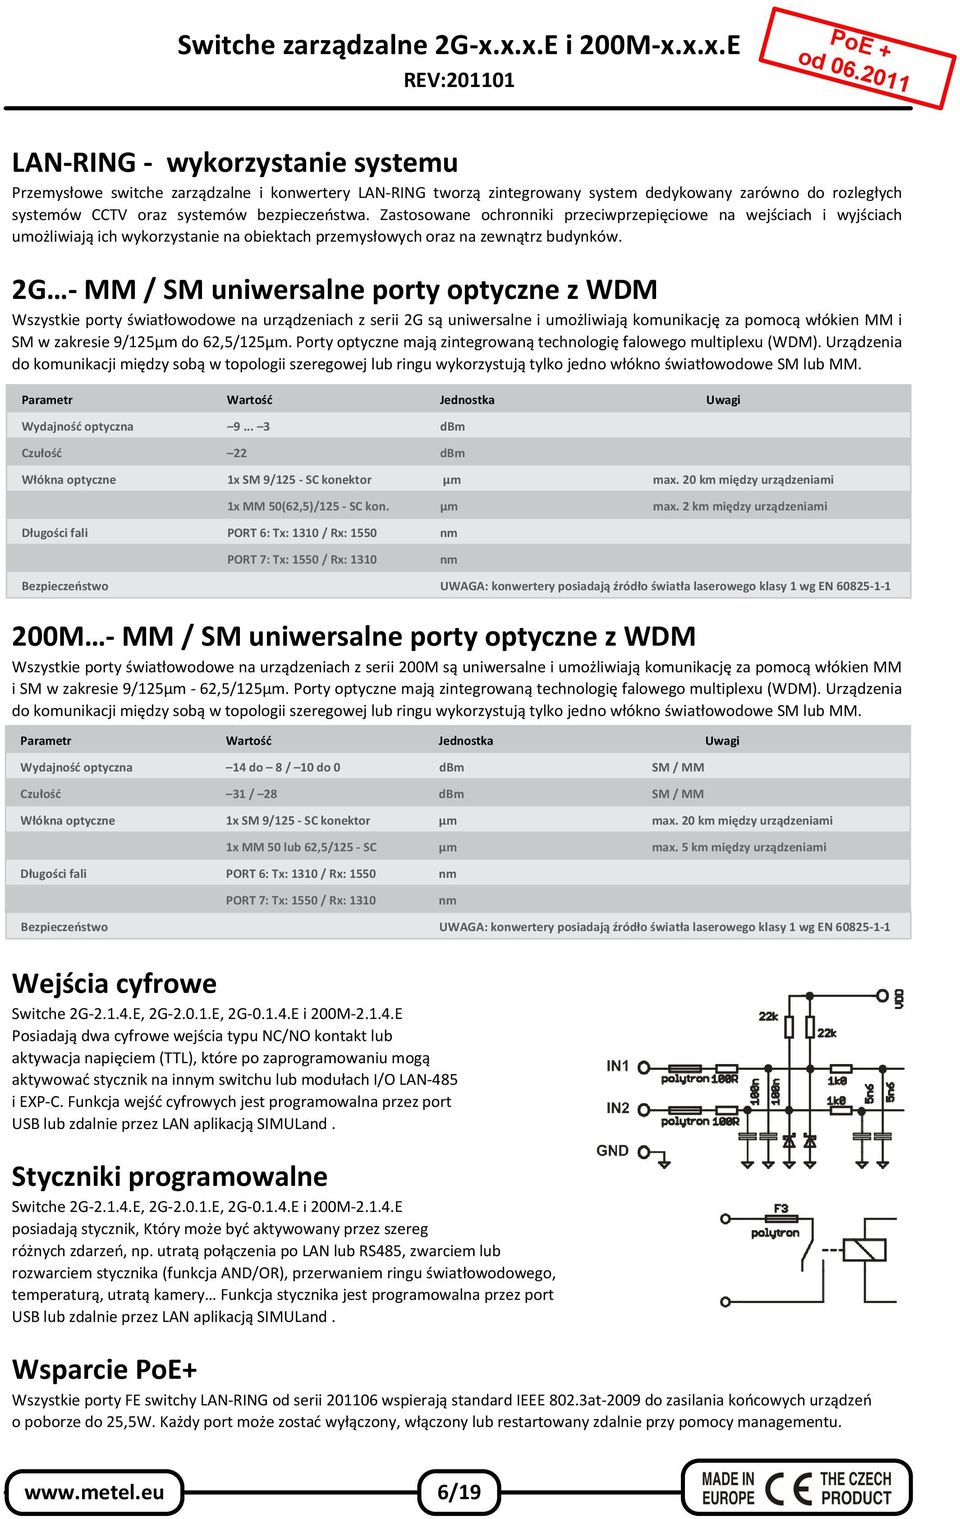 2G - MM / SM uniwersalne porty optyczne z WDM Wszystkie porty światłowodowe na urządzeniach z serii 2G są uniwersalne i umożliwiają komunikację za pomocą włókien MM i SM w zakresie 9/125µm do